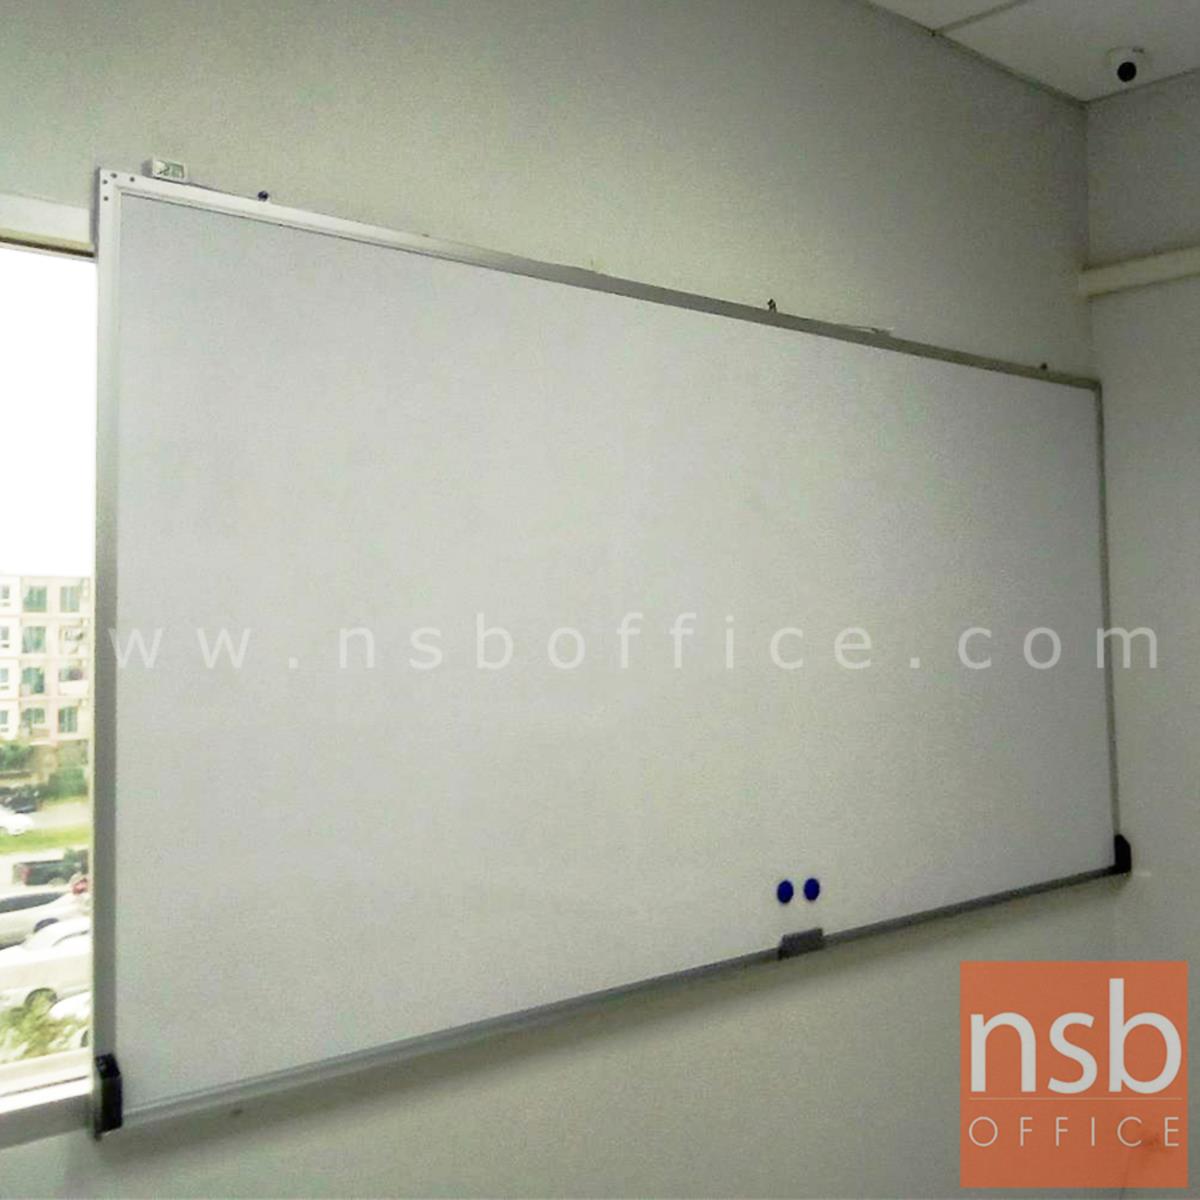 G01A021:กระดานไวท์บอร์ด White board ขนาดใหญ่   ขอบอลูมิเนียมขนาด  1" * 1/2" นิ้ว (พร้อมงานติดตั้งบนผนัง)